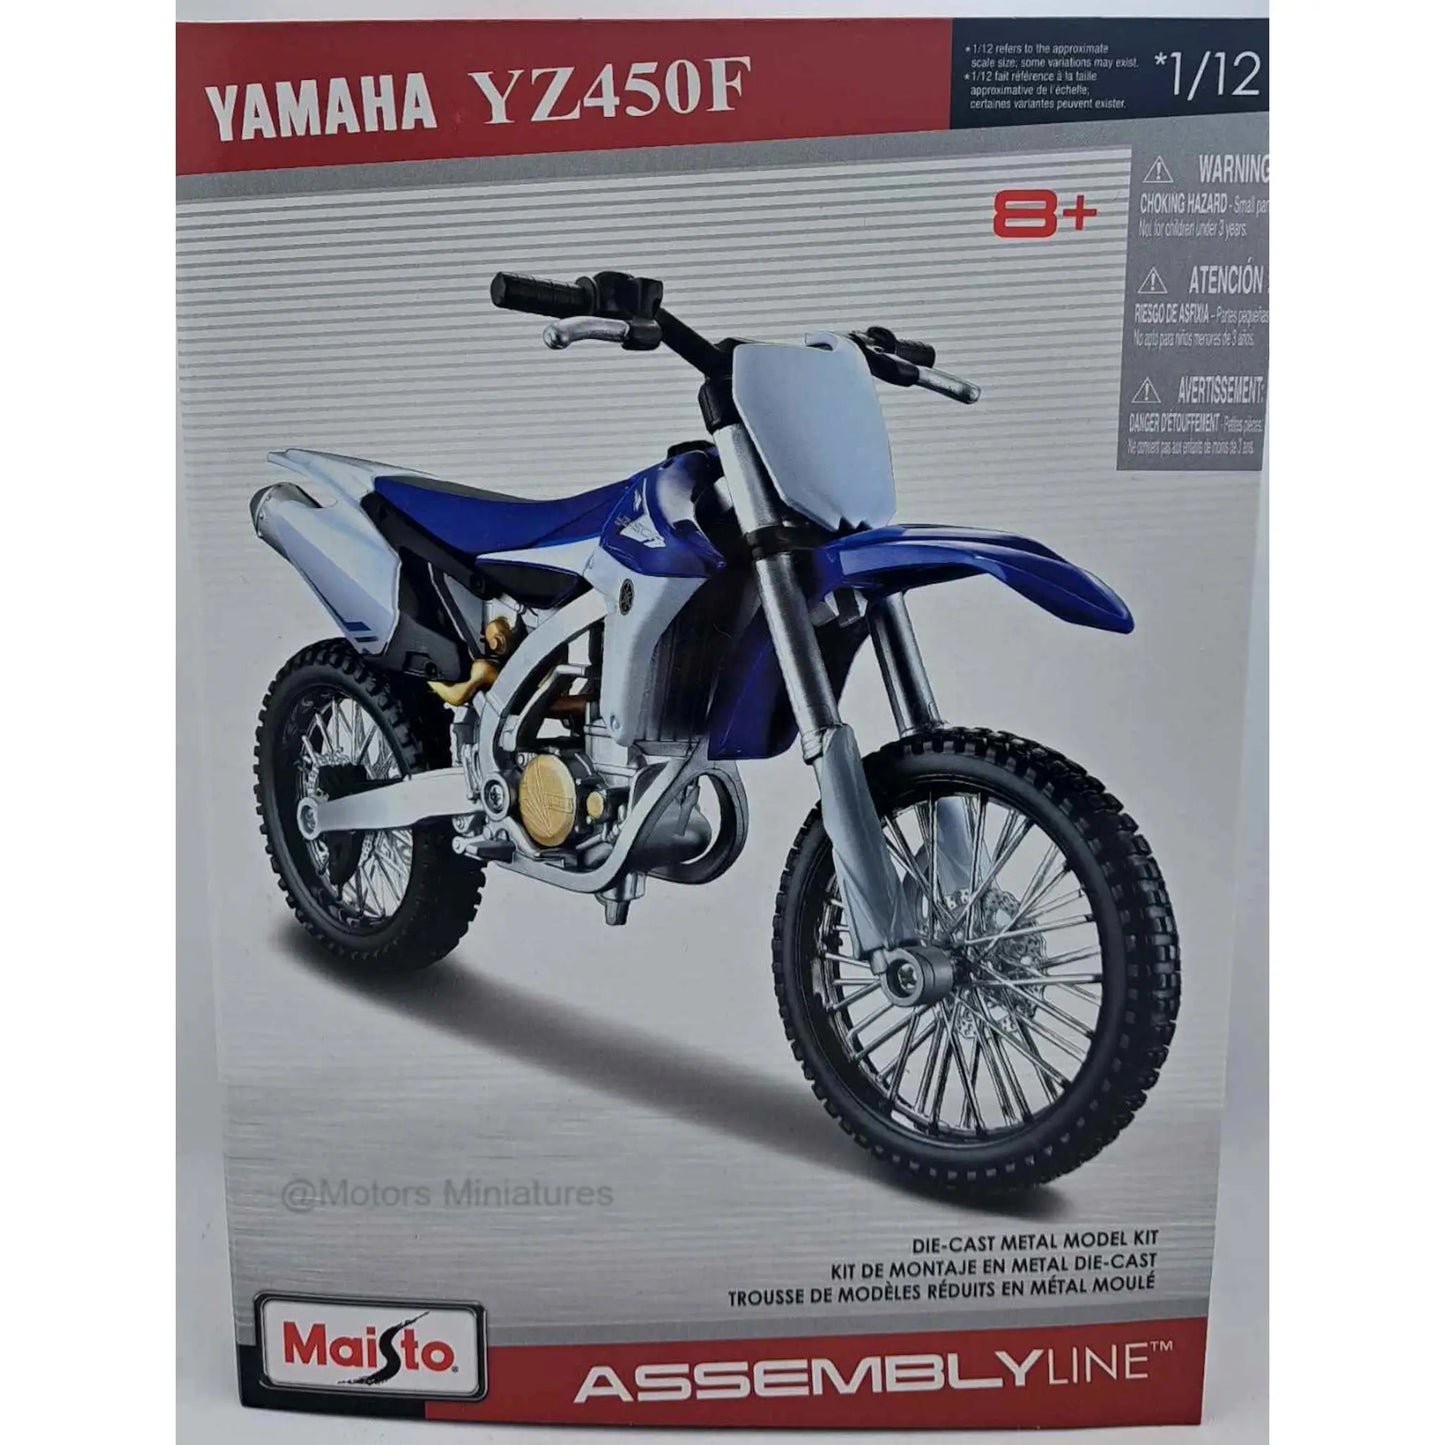 Yamaha YZ450F modelkit Maisto 1/12 | Motors Miniatures